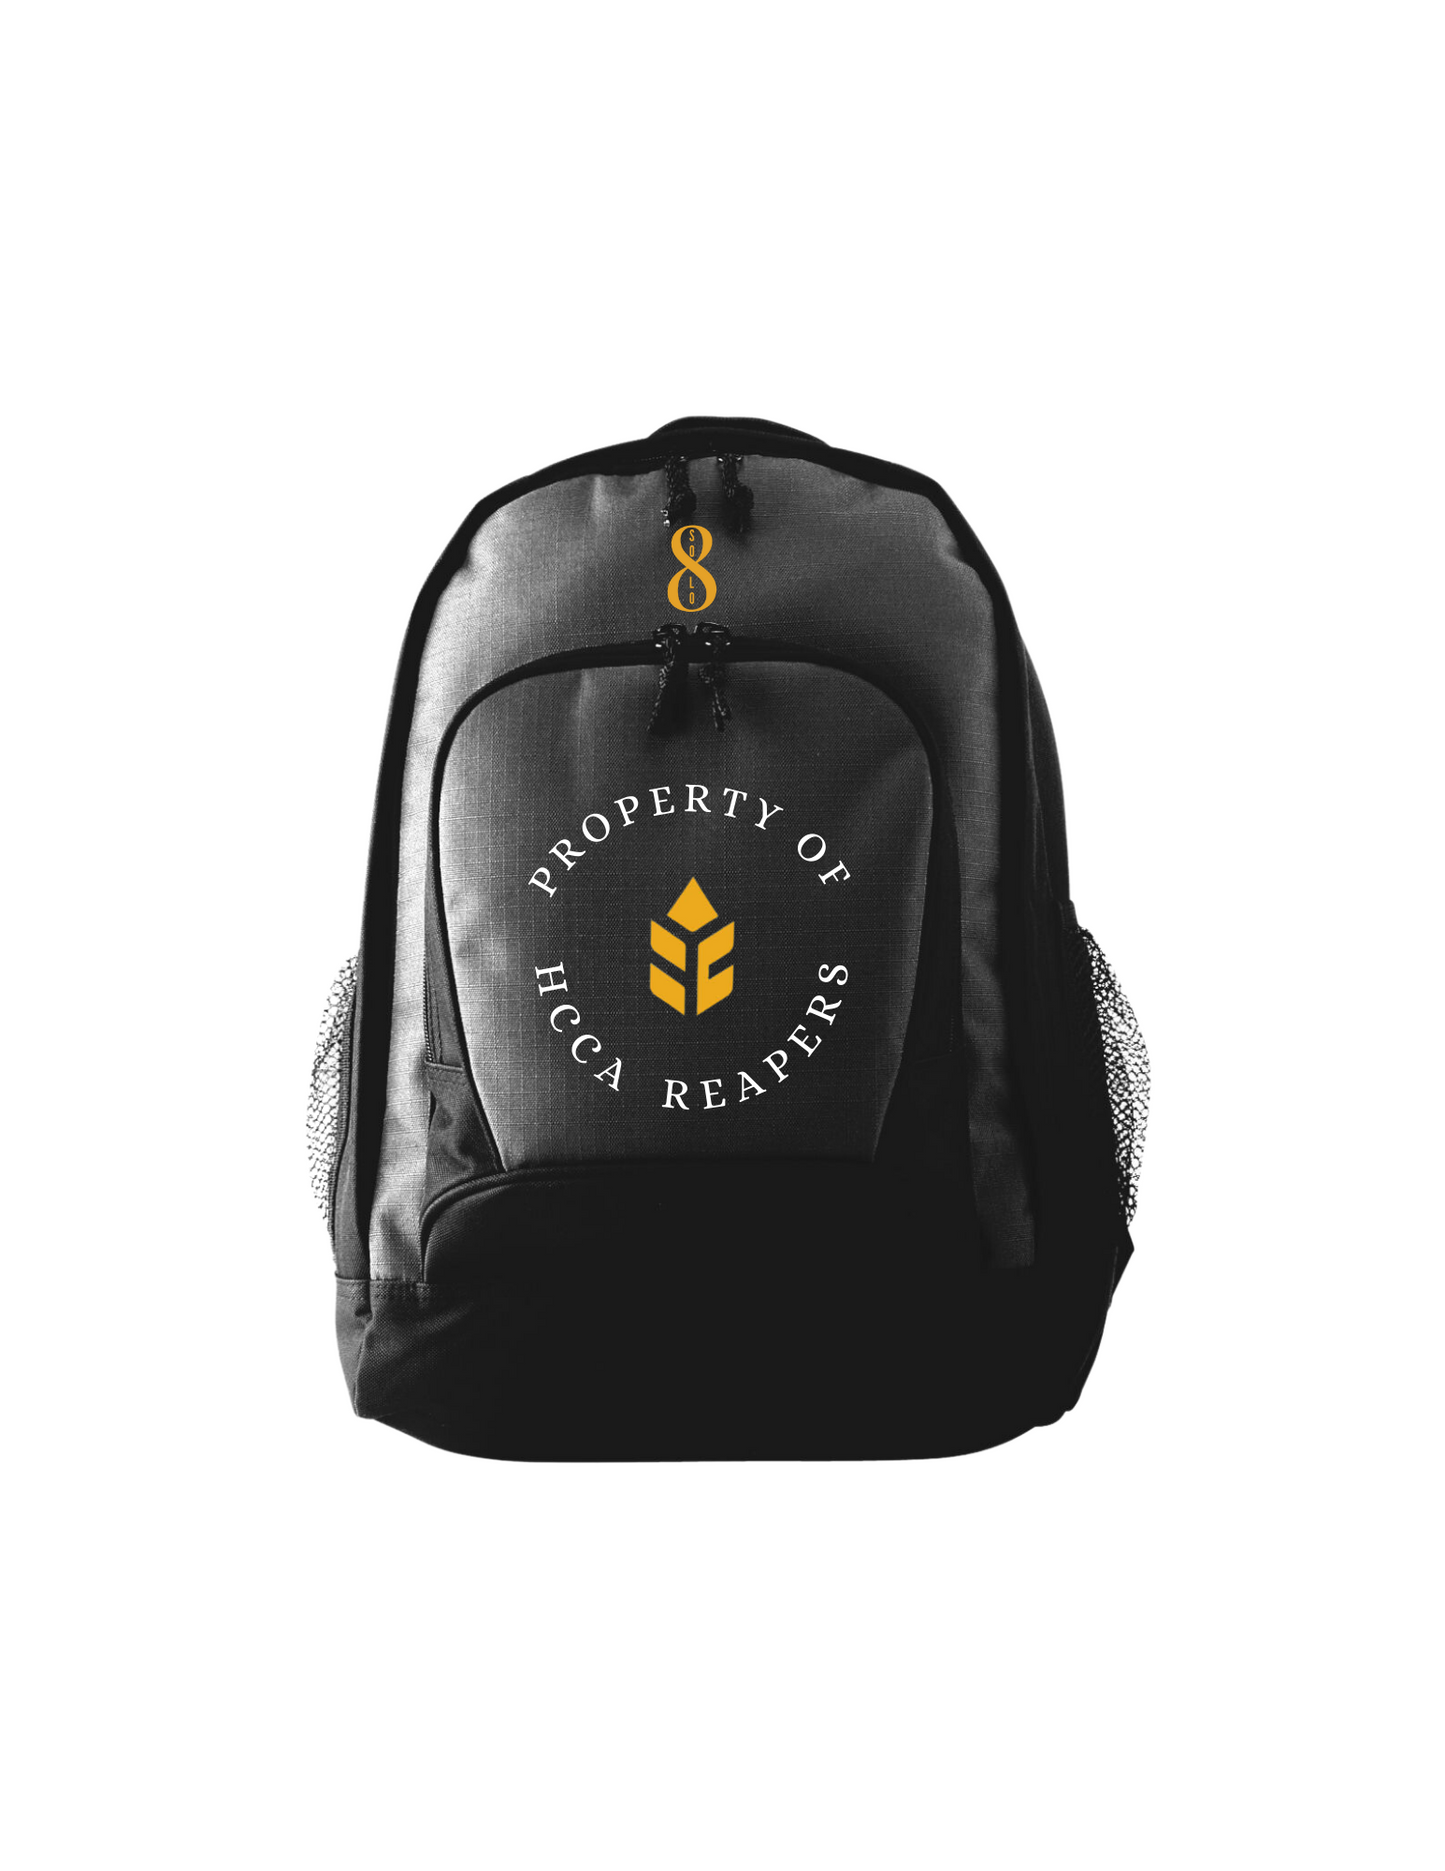 Harvest City Backpacks